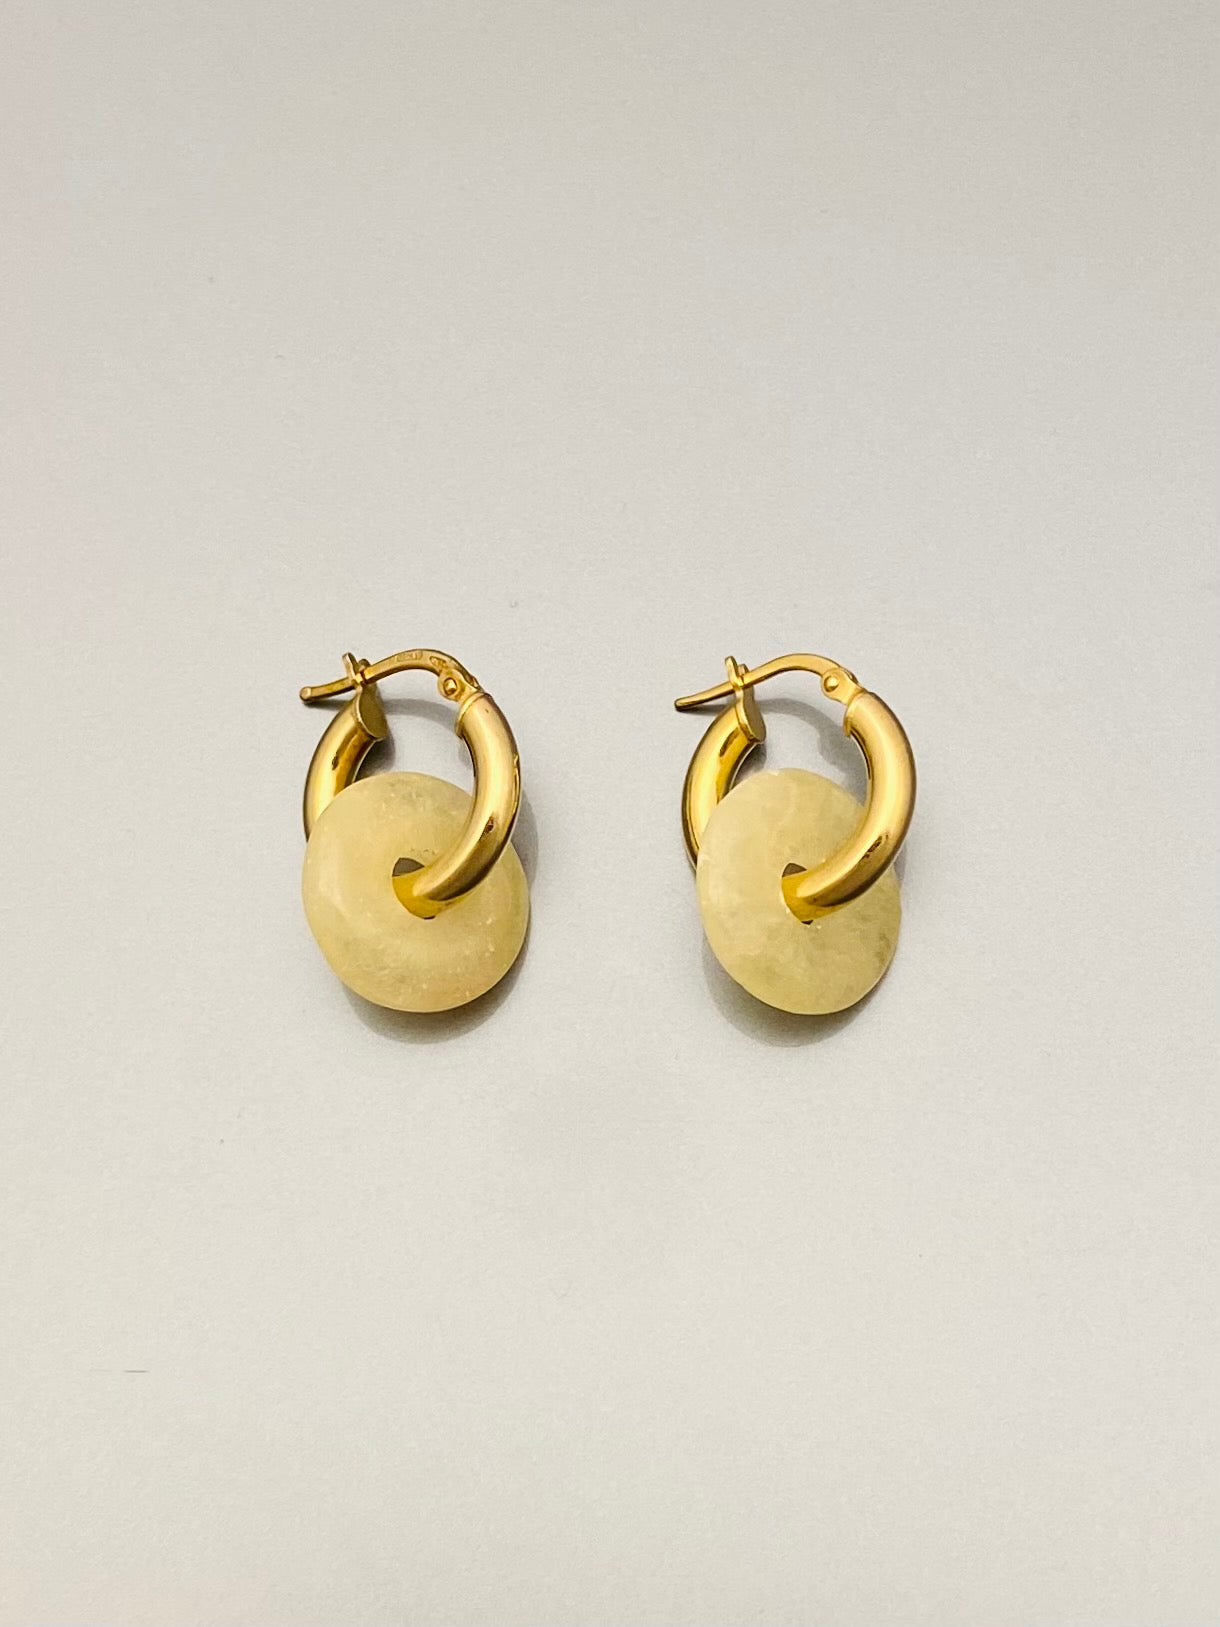 Calcite earrings